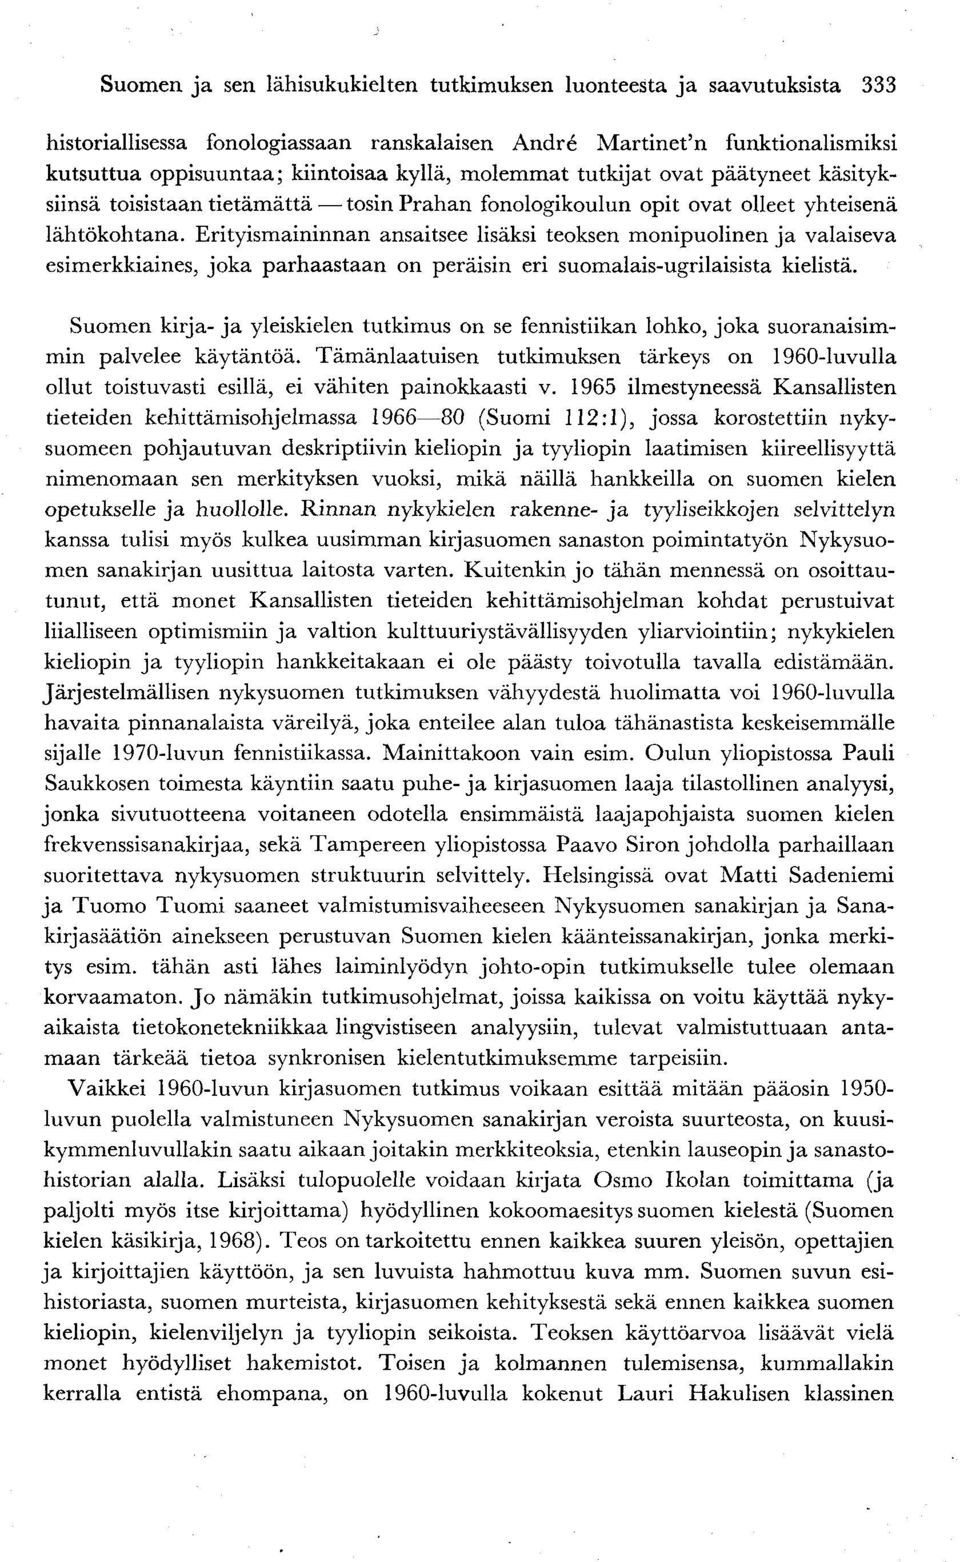 Erityismaininnan ansaitsee lisäksi teoksen monipuolinen ja valaiseva esimerkkiaines, joka parhaastaan on peräisin eri suomalais-ugrilaisista kielistä.